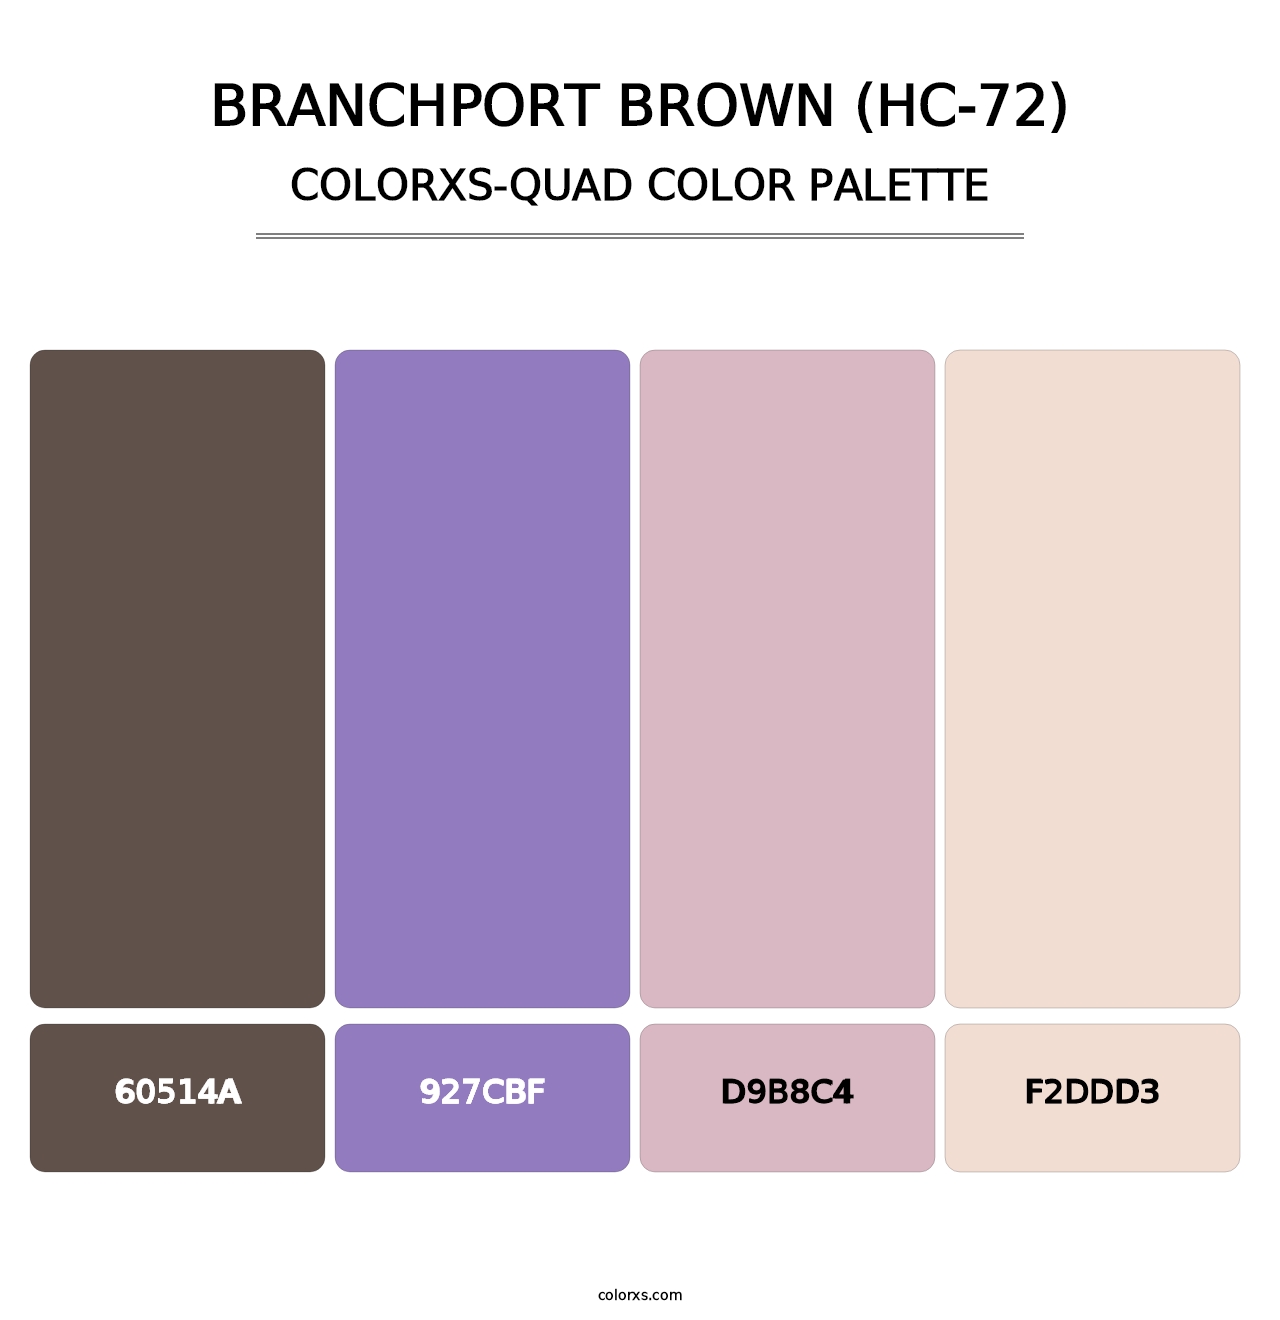 Branchport Brown (HC-72) - Colorxs Quad Palette